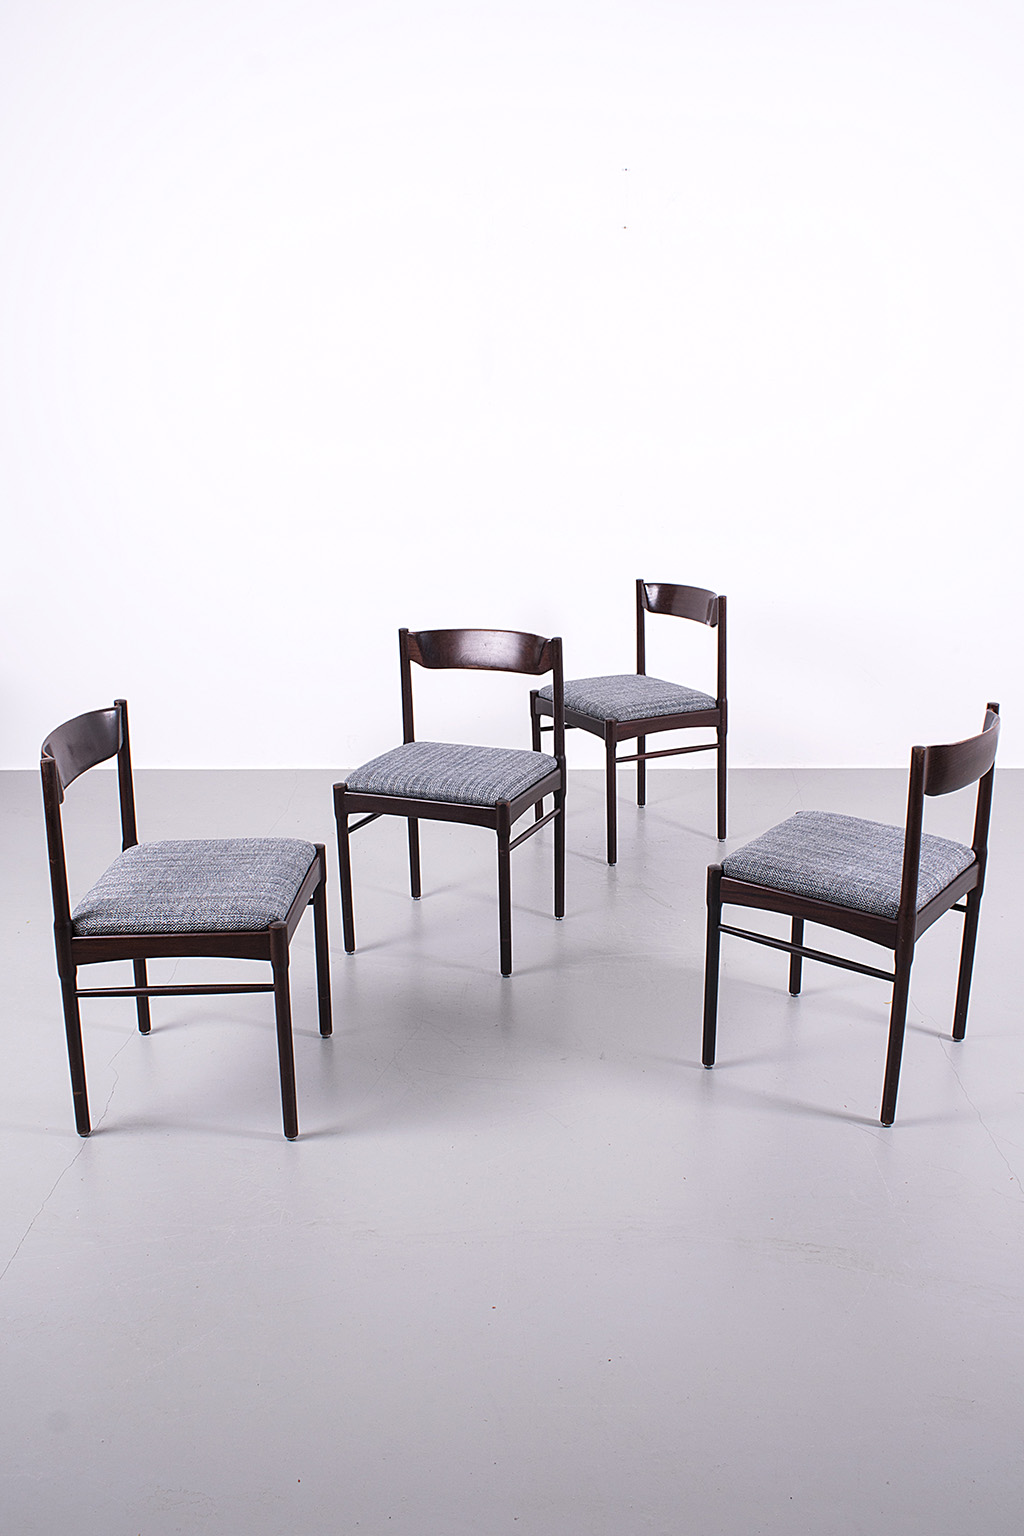 Set of 4 dark wooden chairs